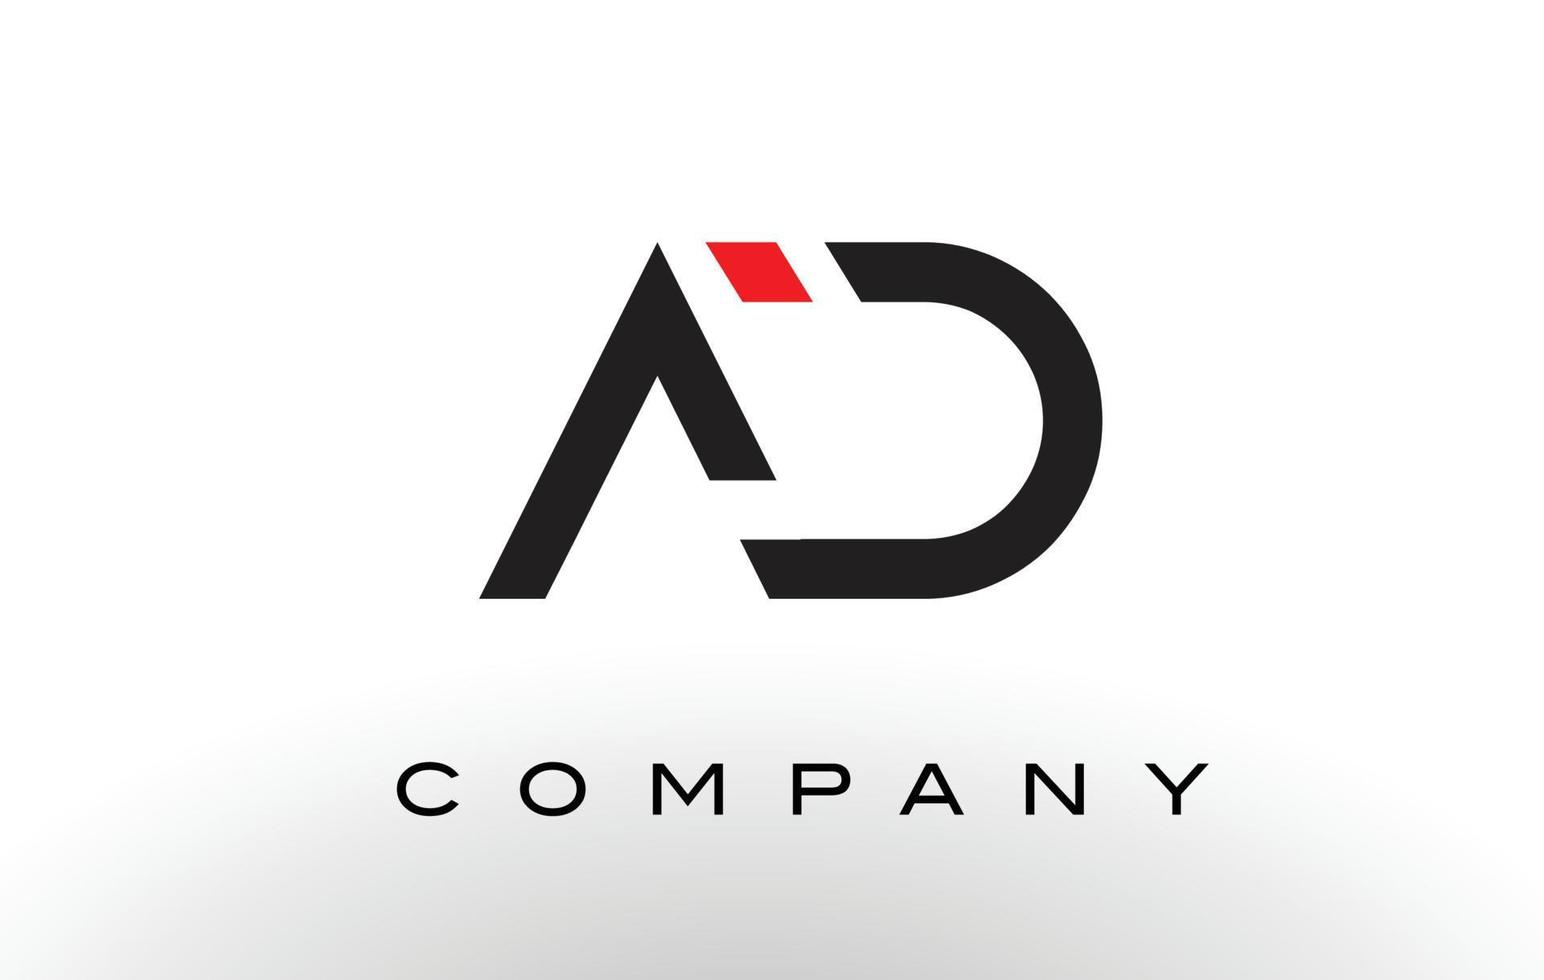 logotipo del anuncio. vector de diseño de letra.